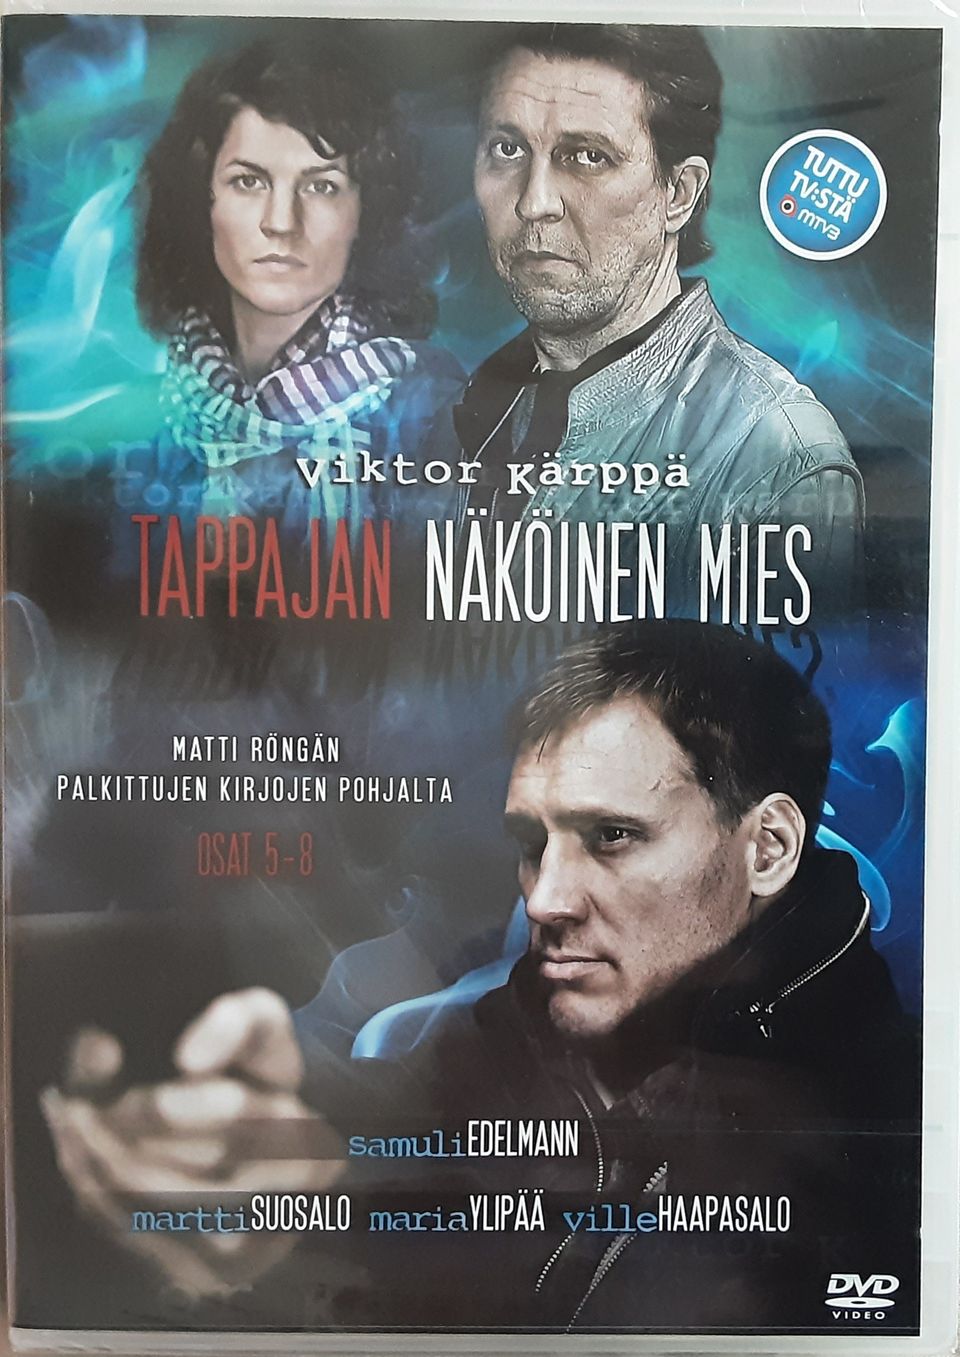 Viktor Kärppä-Tappajan näköinen mies, 2010, osat 5-8 (DVD)